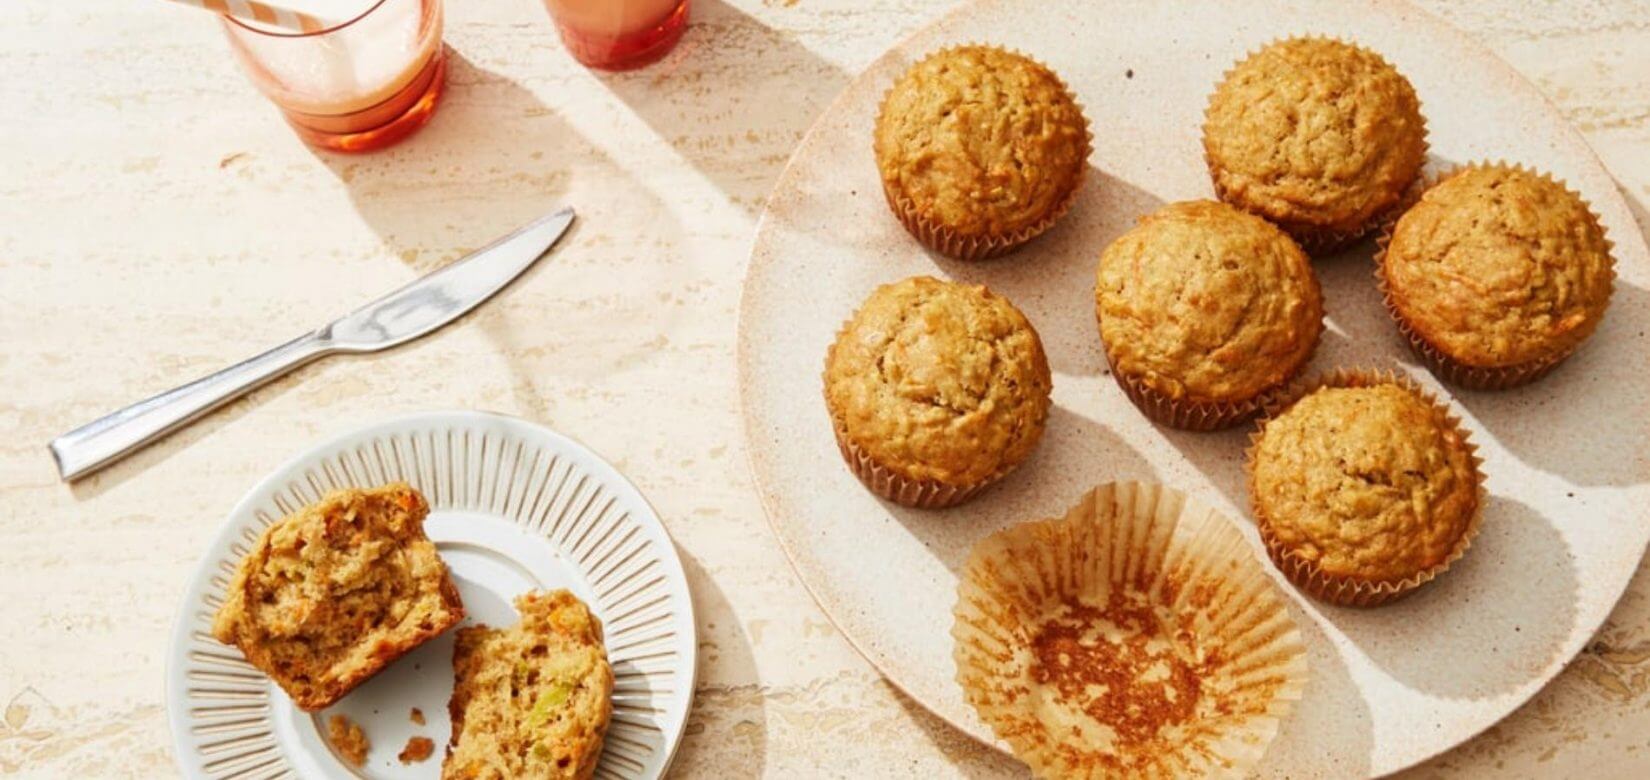 Έτσι θα φτιάξετε τα νοστιμότερα muffins με καρότο και μήλο!